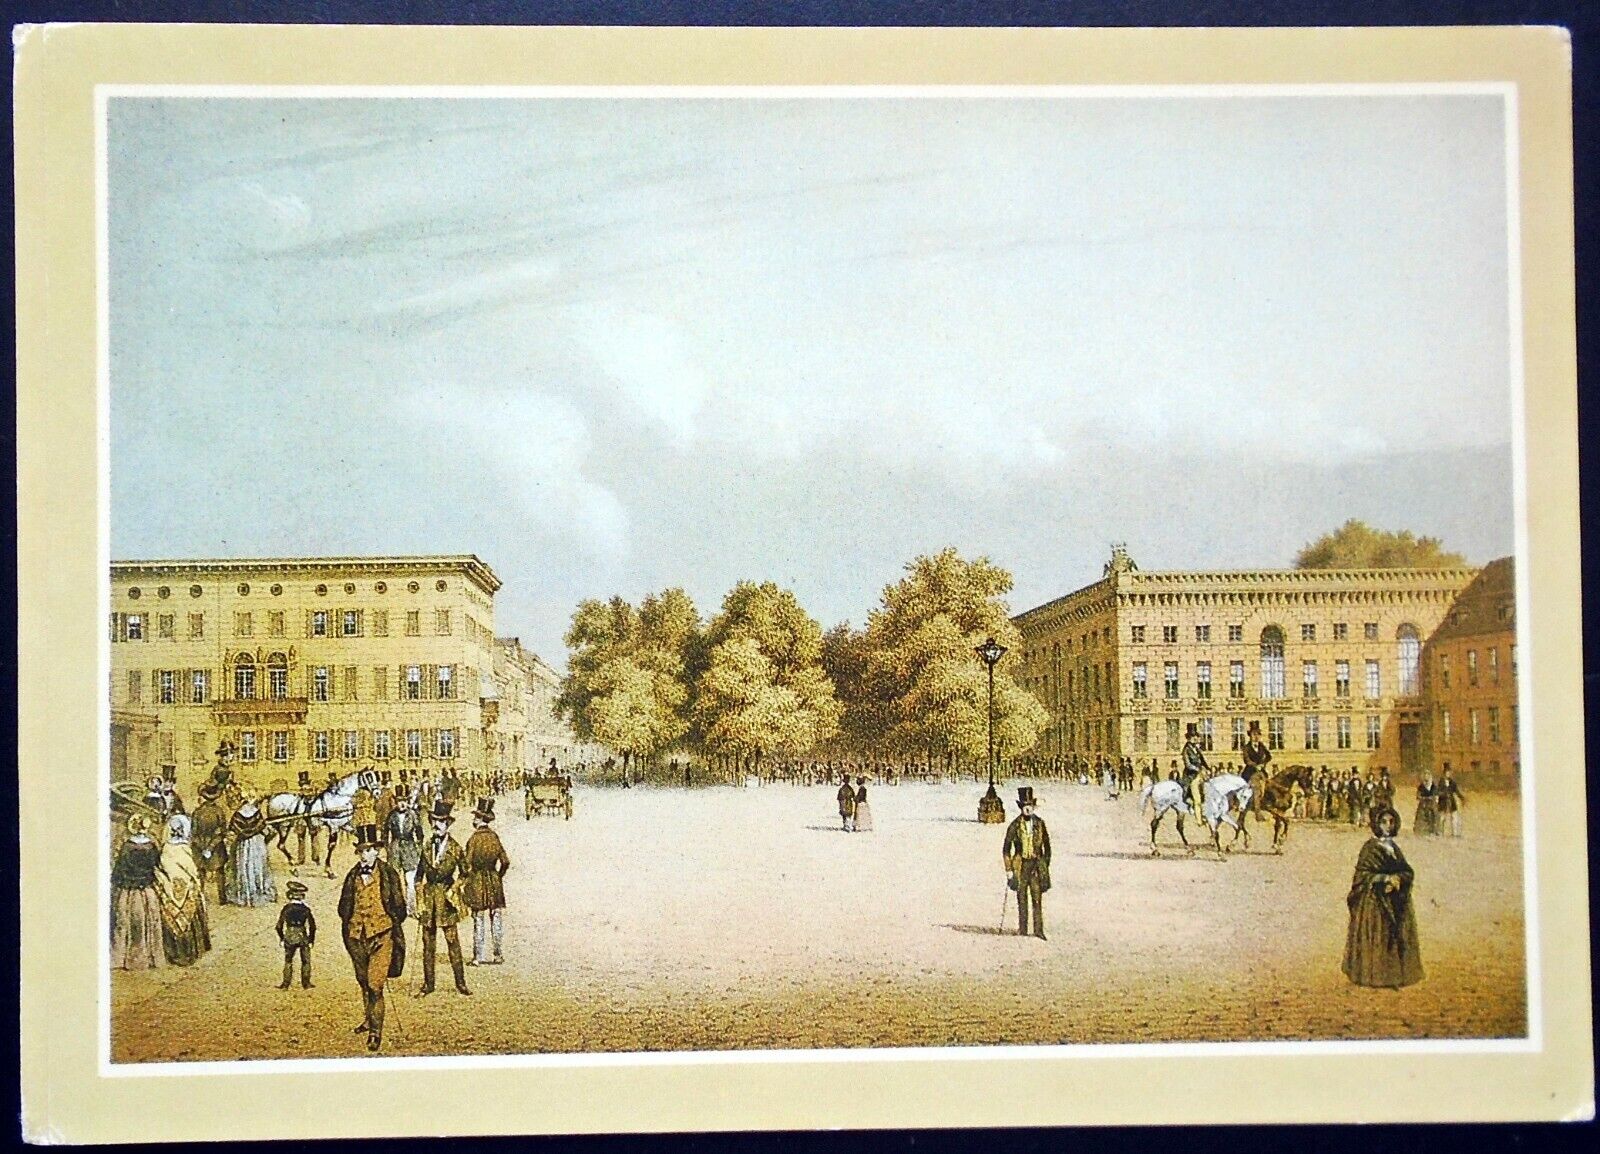 1970s View from Pariser Platz, Unter den Linden, Lithograph, Berlin, East German